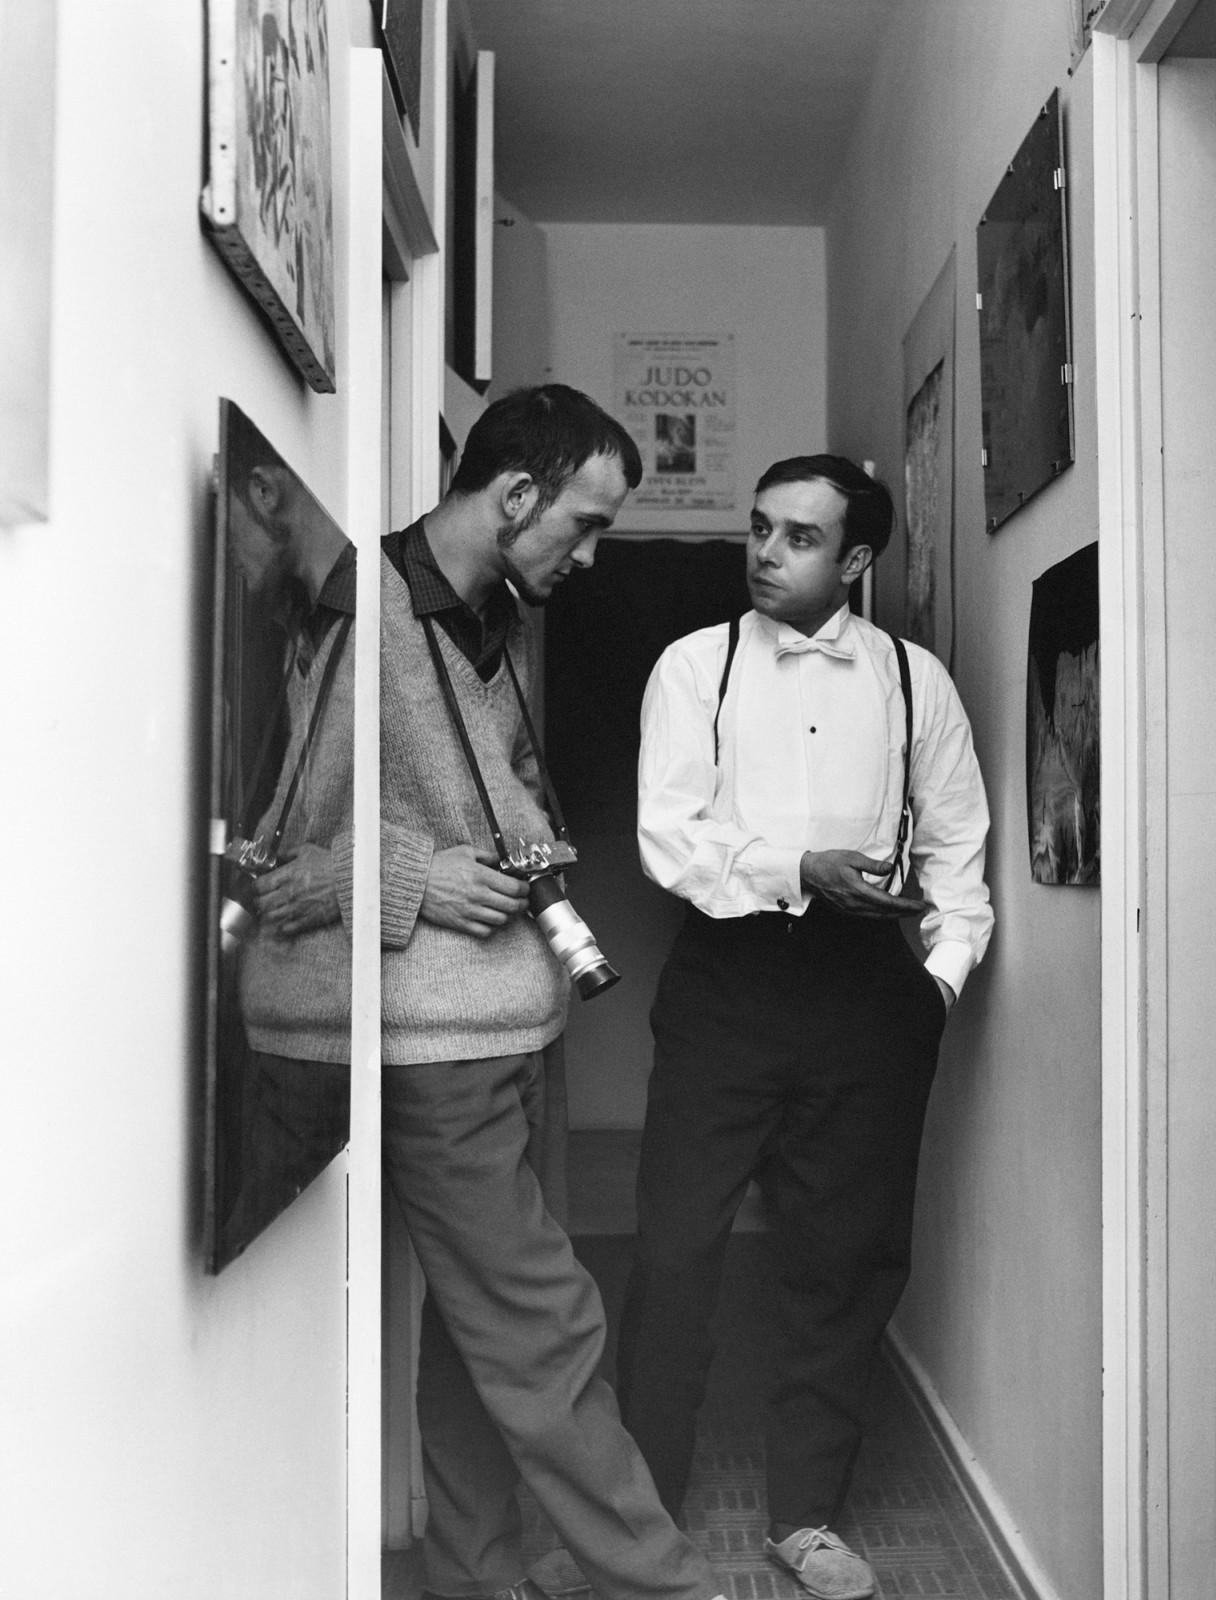 Yves Klein and Janos Kender in Yves Klein's studio